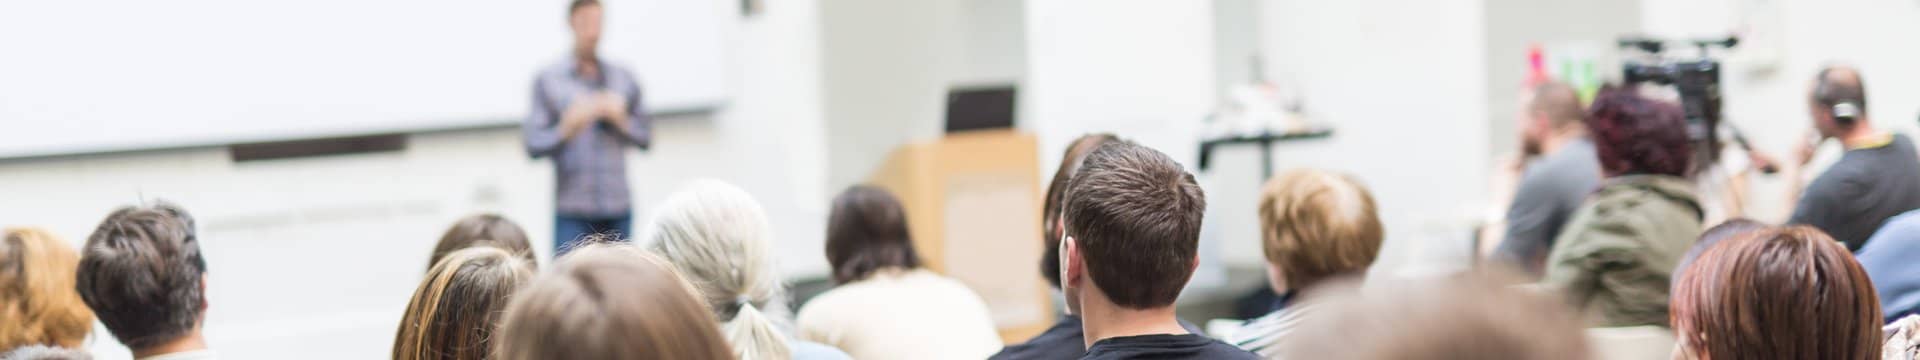 Unterschiedliche Studenten in einer Universität hören einer Person zu, die einen Vortrag hält.